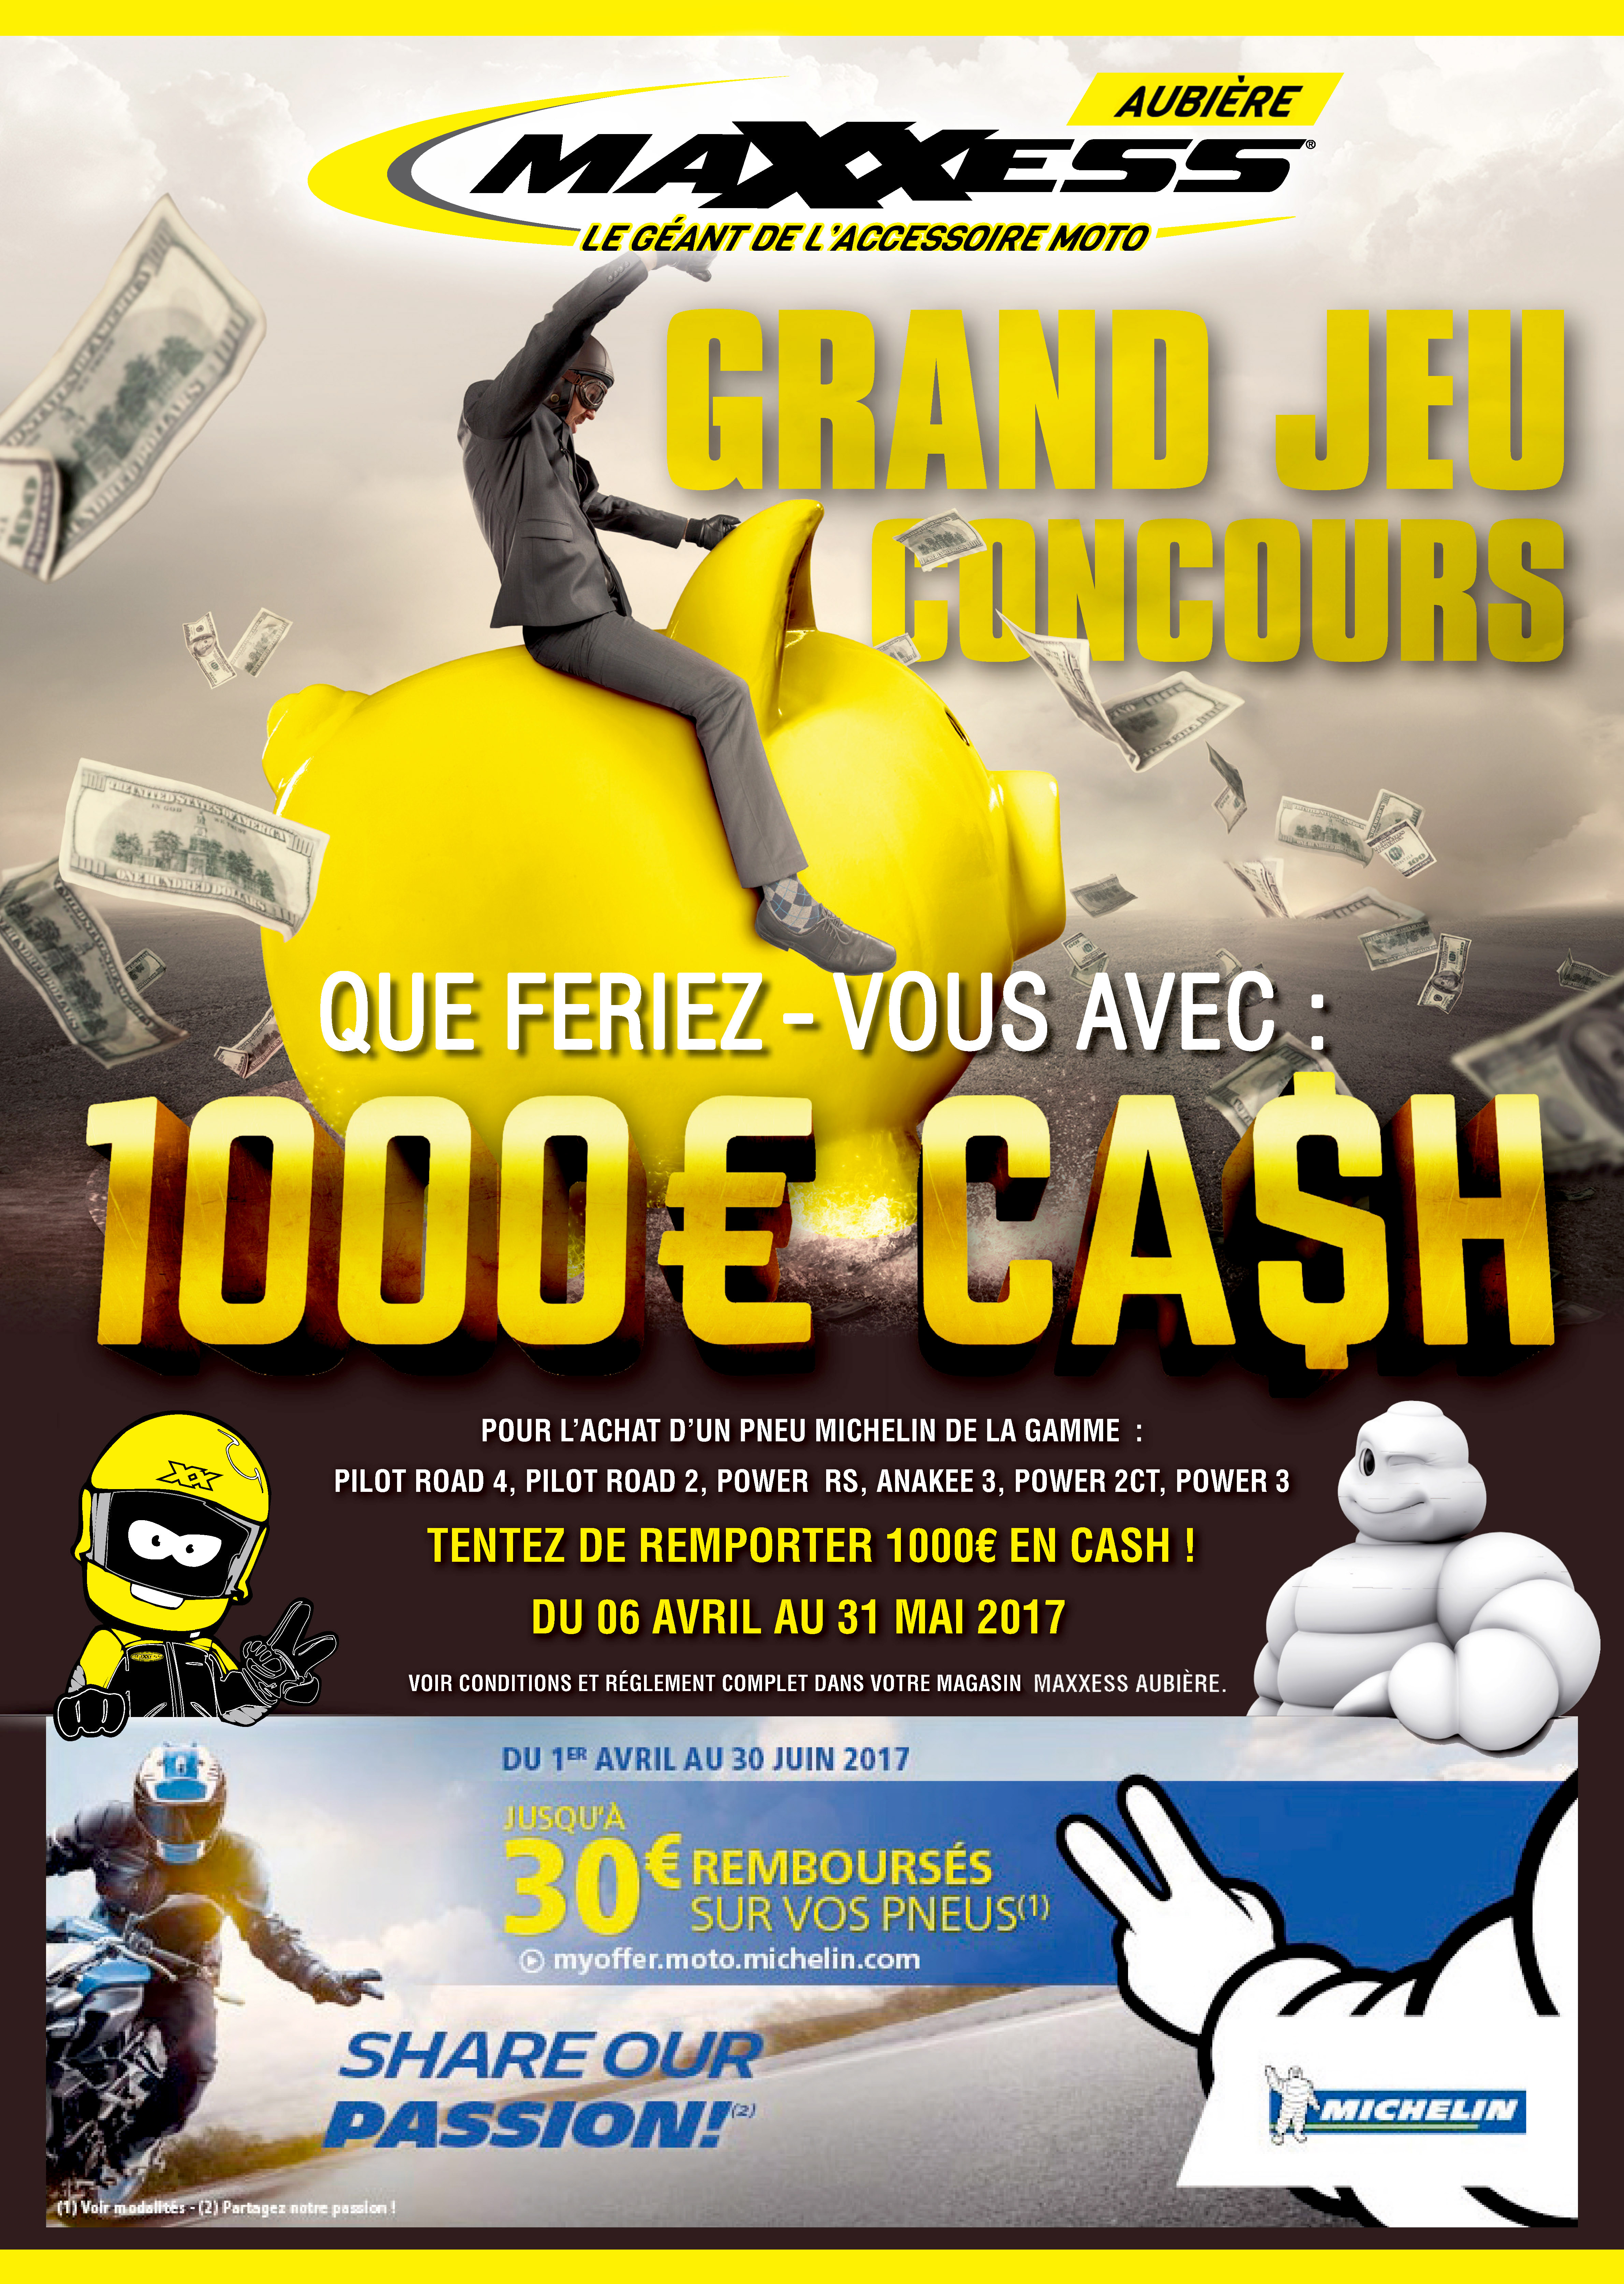 Tentez de remporter 1 000€ en cash avec MAXXESS Aubière !